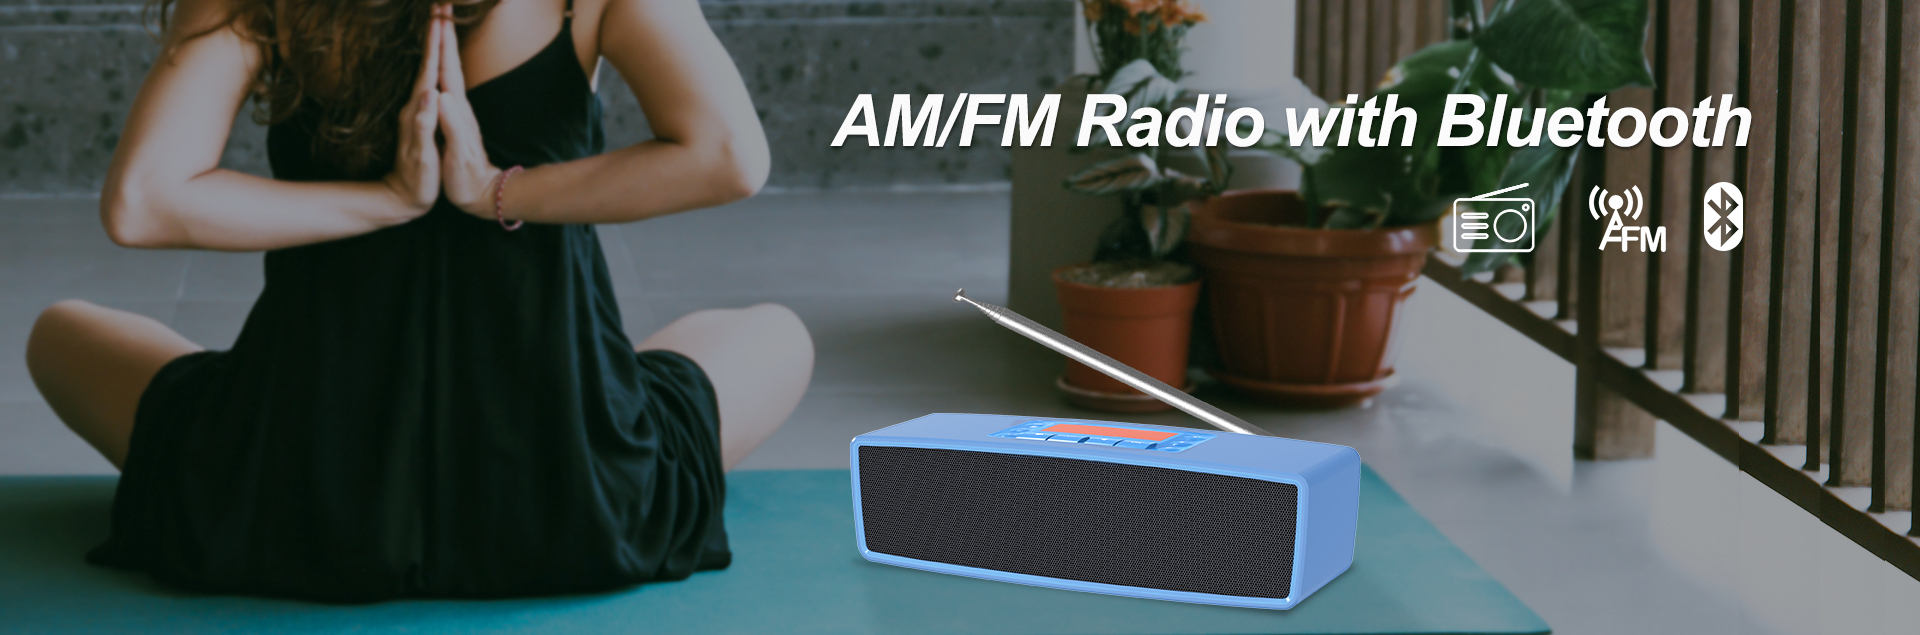 AM/FM Radio with Bluetooth